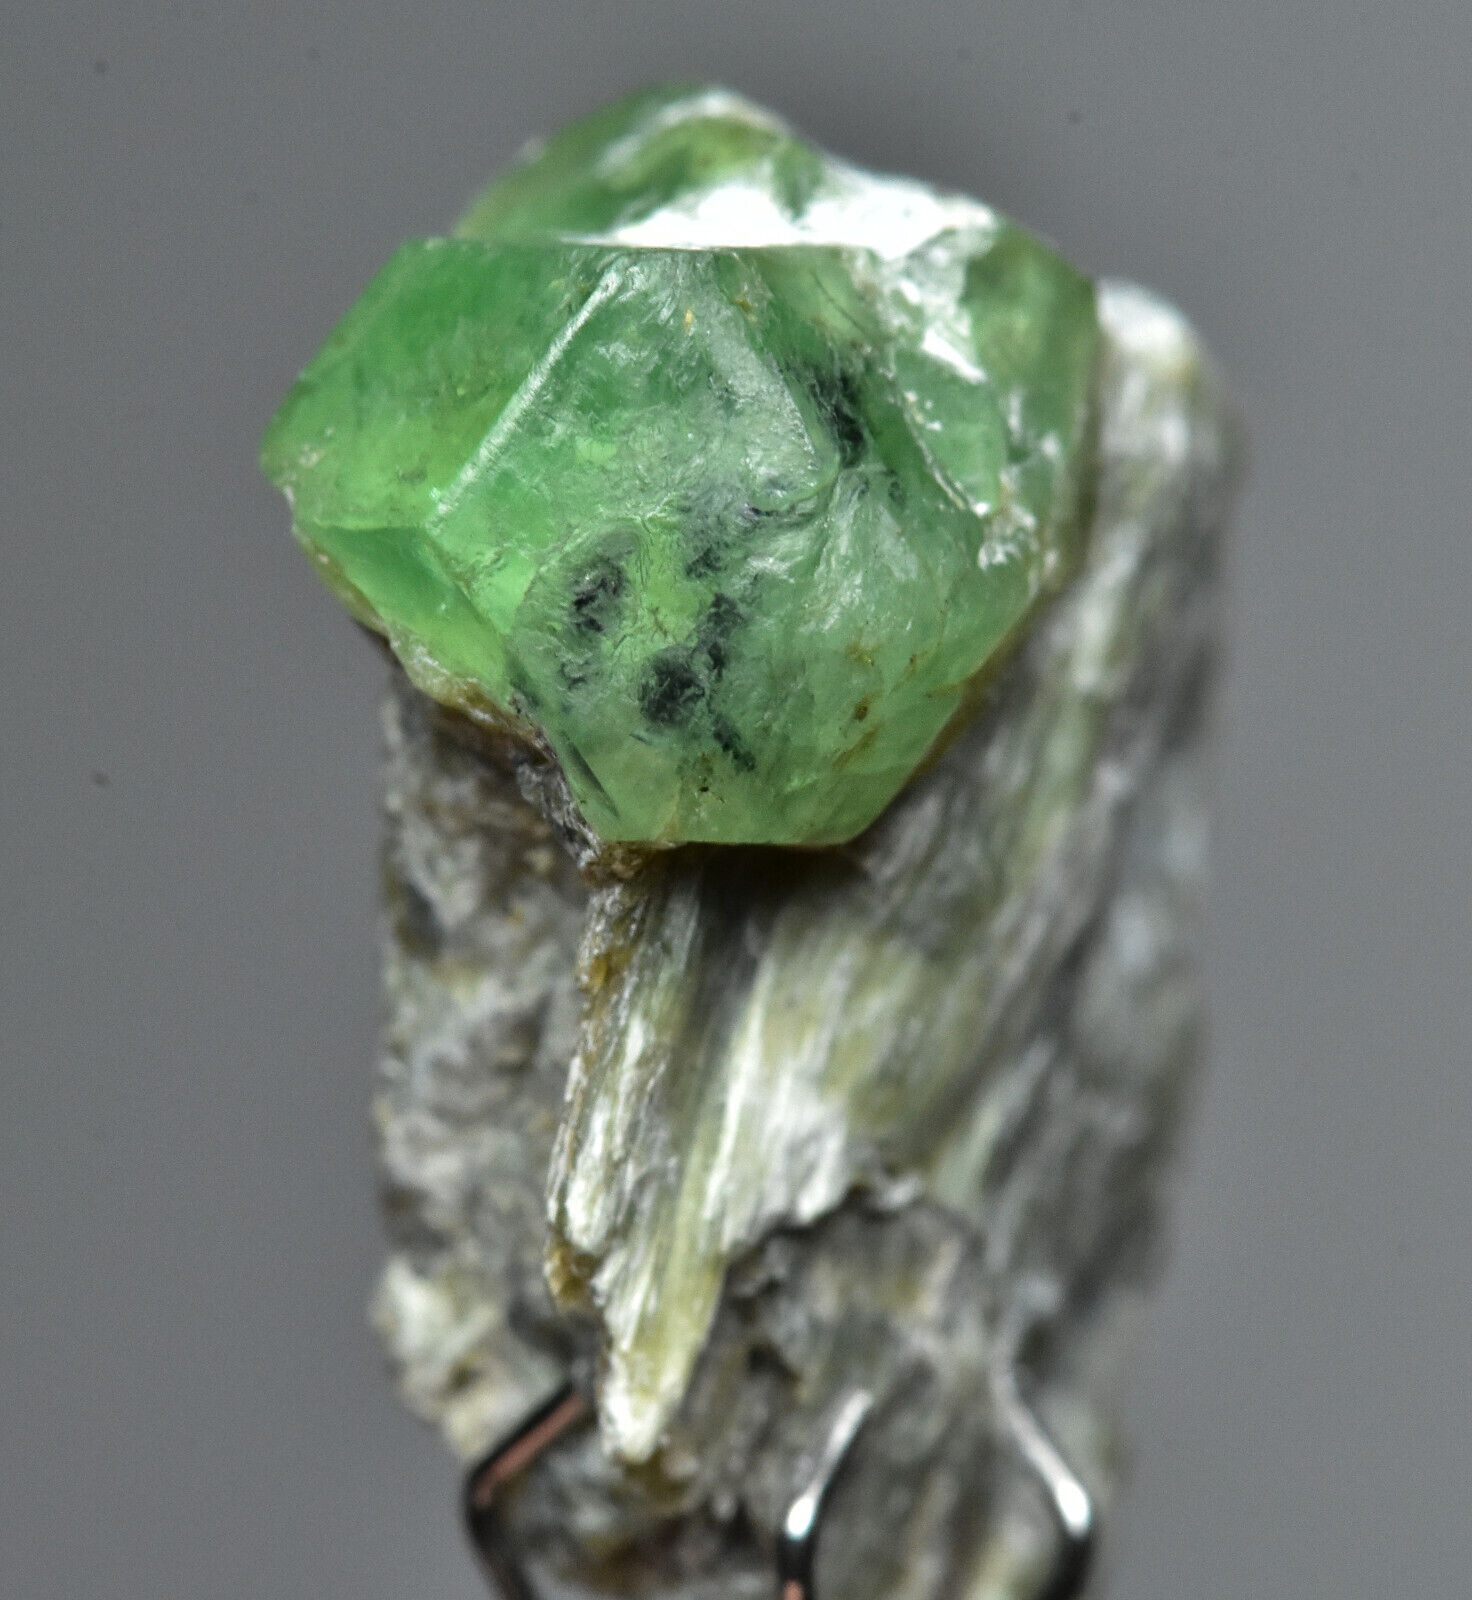 13 Carat Rare Unique Demantoid Garnet Crystal Specimen